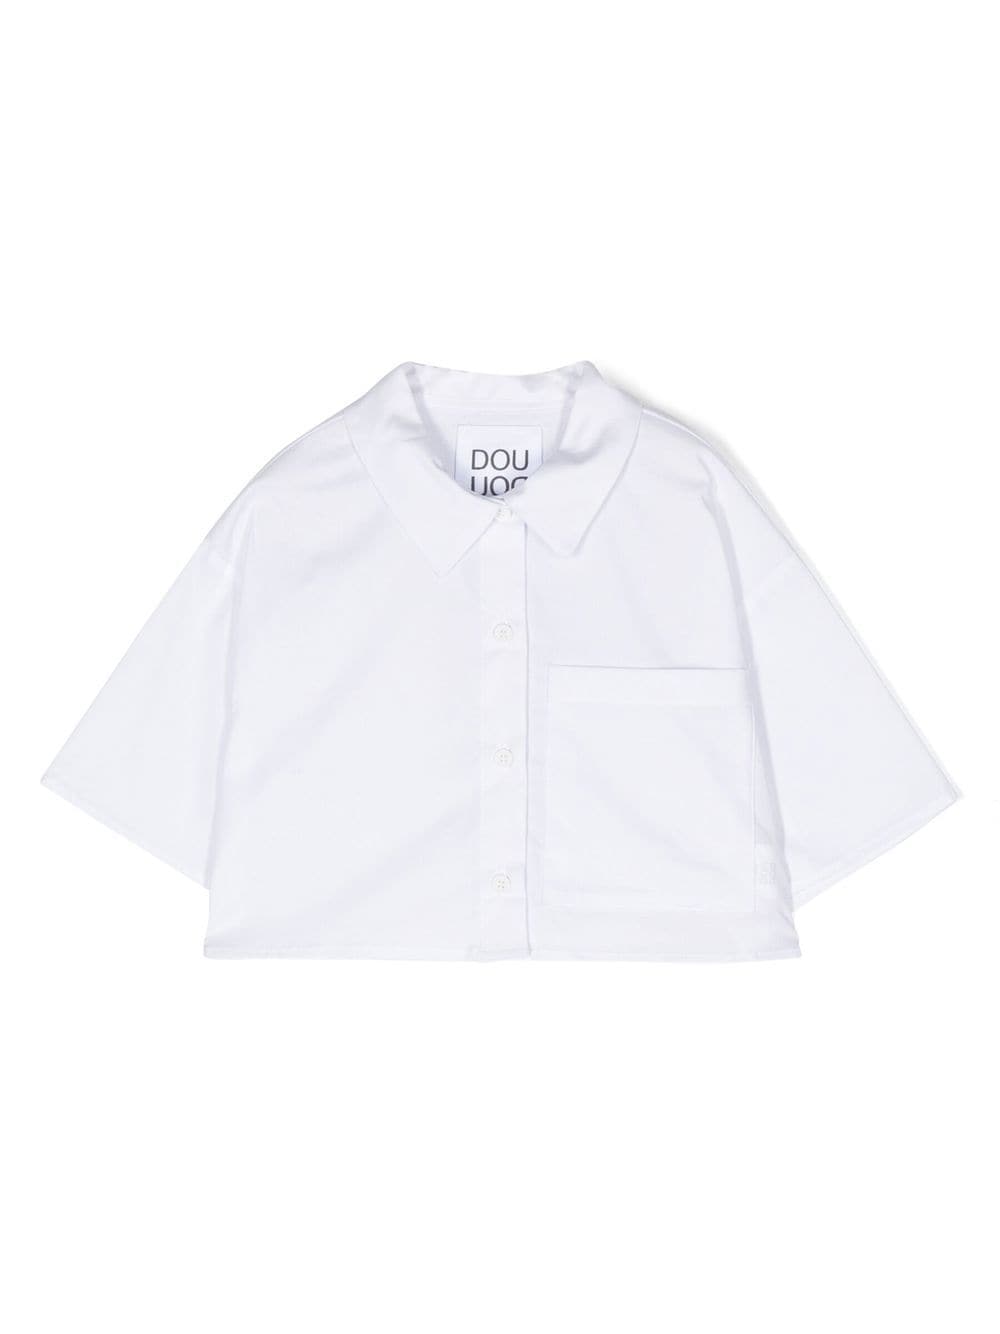 Douuod Kids' Short-sleeved Shirt In White